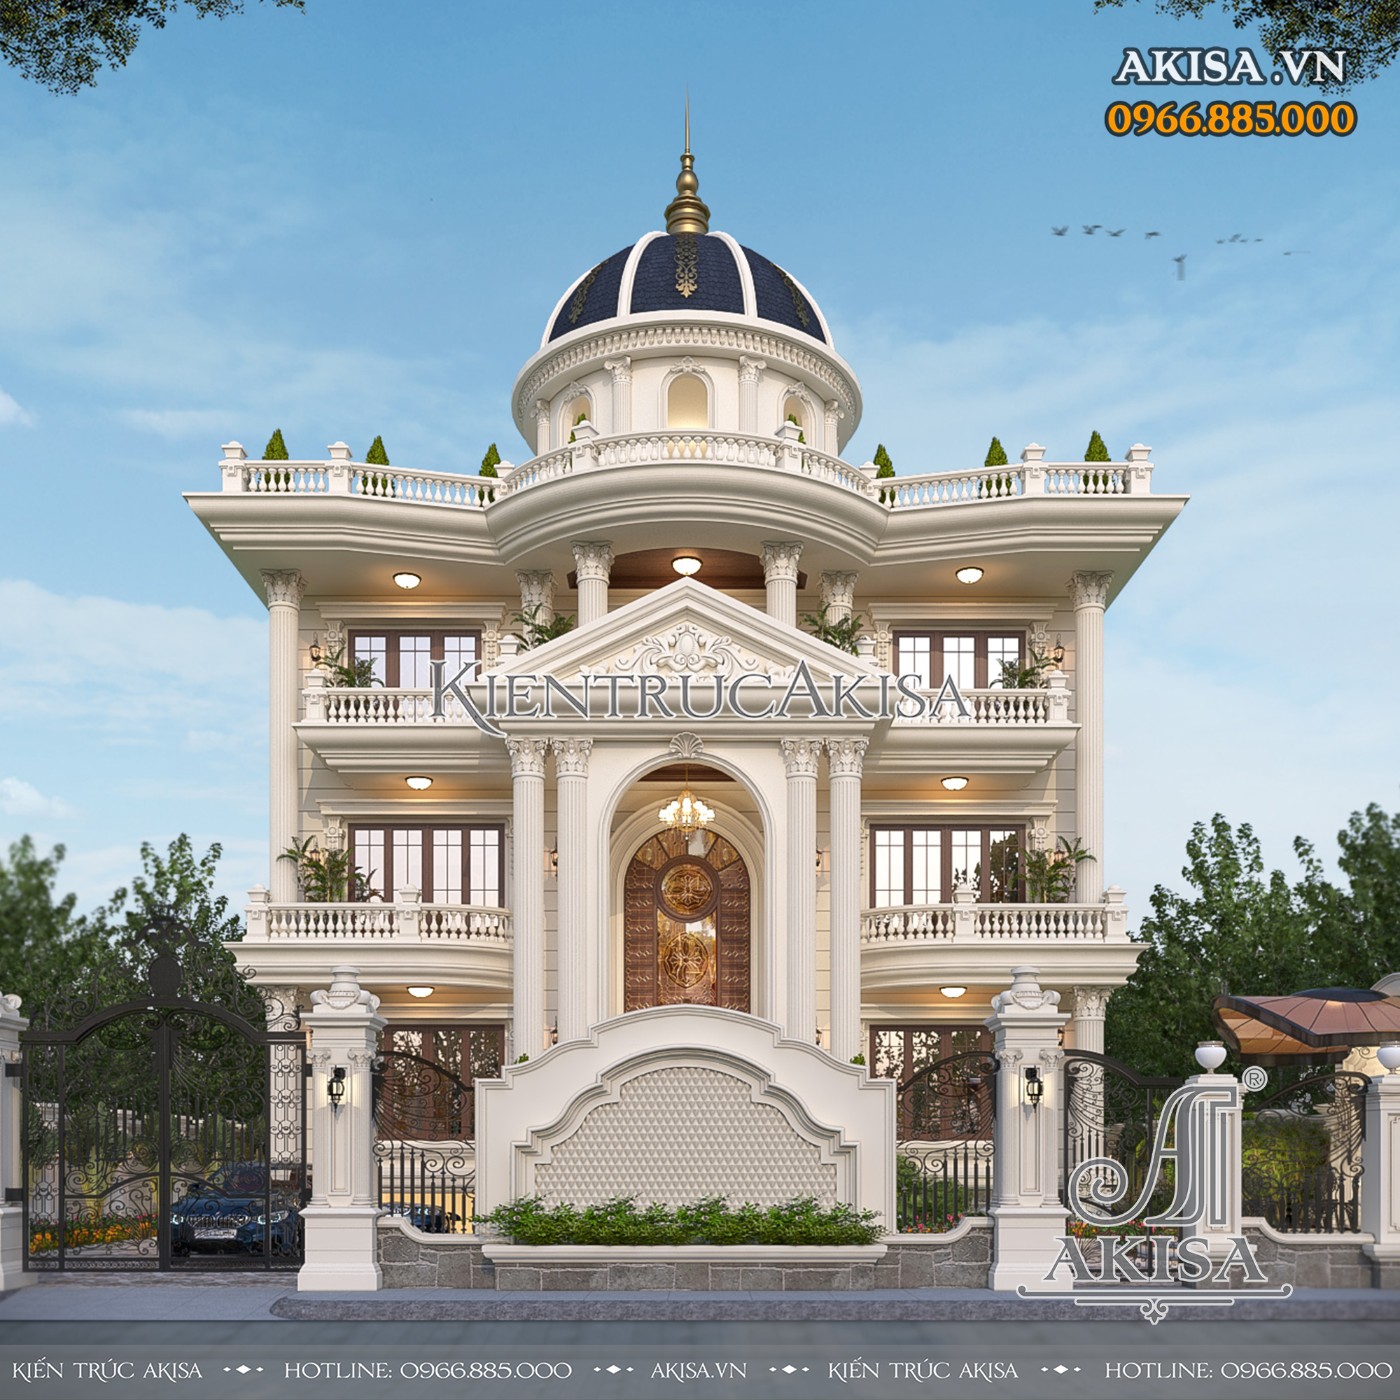 Thiết kế biệt thự 3 tầng phong cách tân cổ điển đẹp đẳng cấp tại Tiền Giang